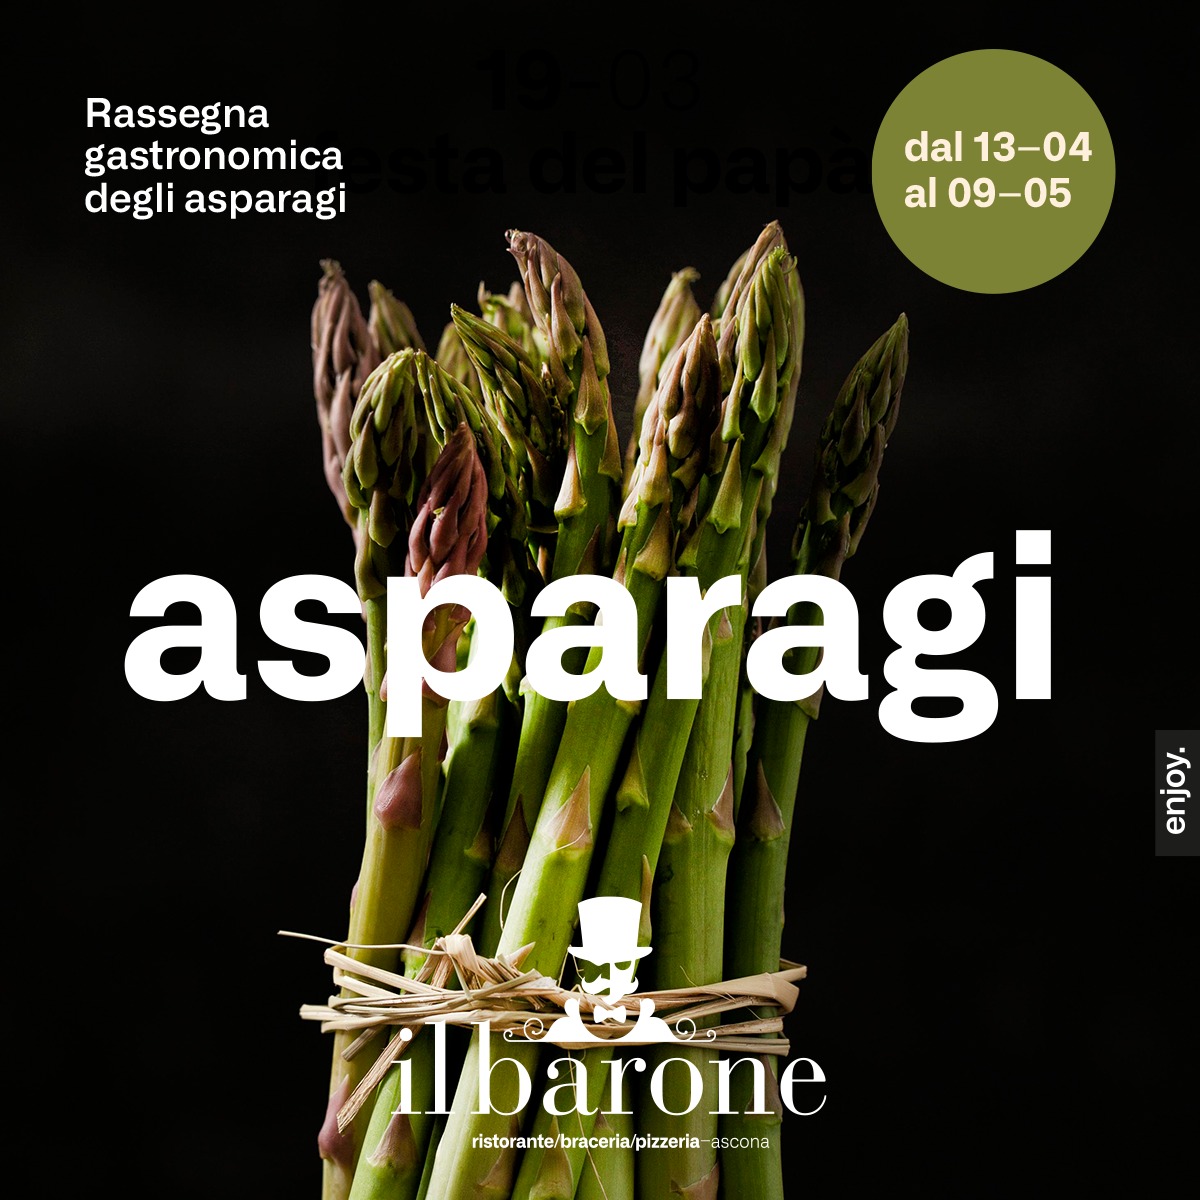 Rassegna gastronomica degli asparagi